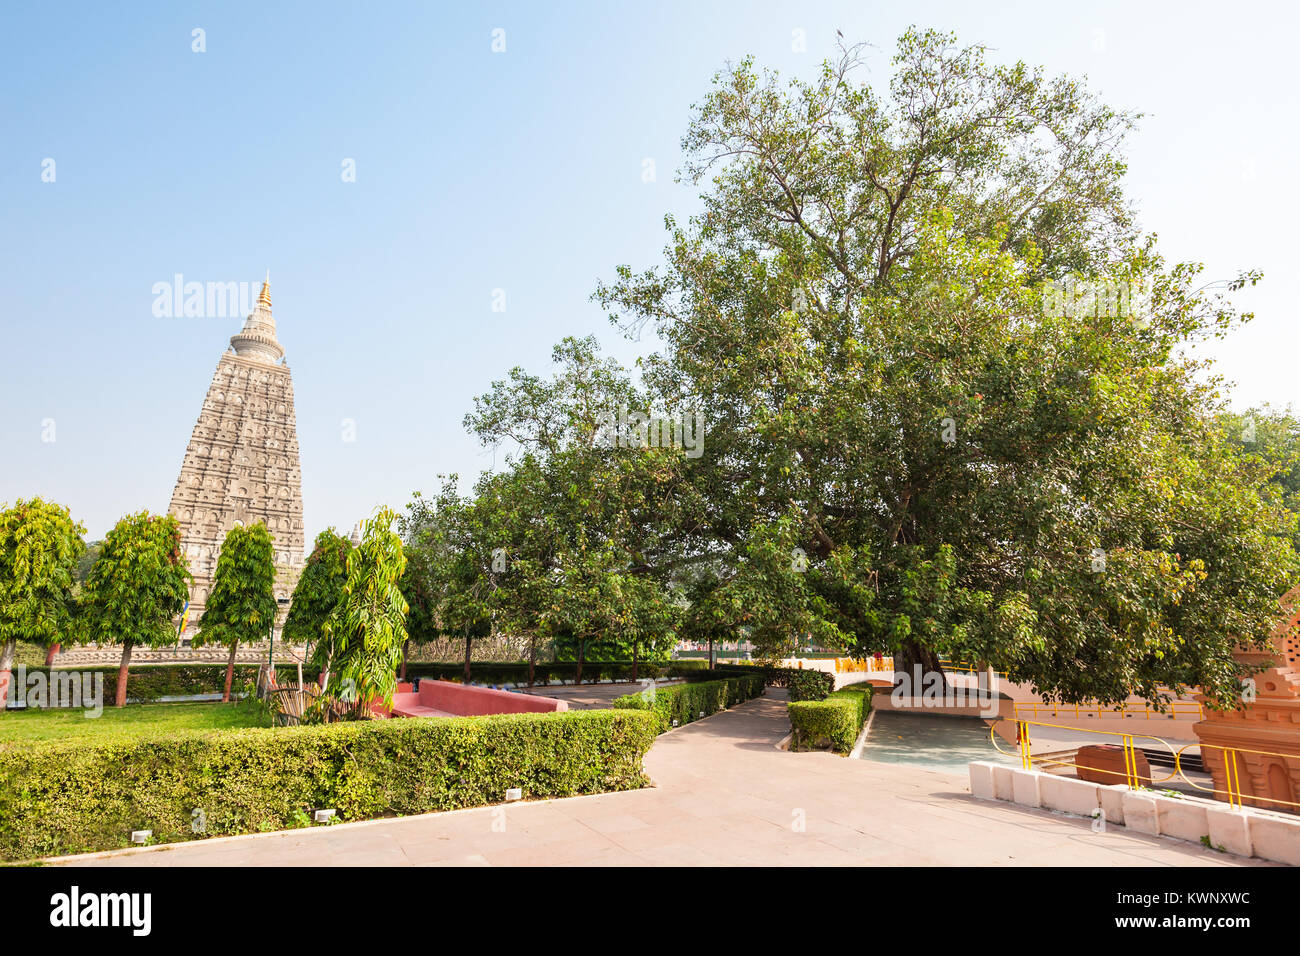 La Bodhi Tree è un grande e molto vecchio sacro fico situato in Bodh Gaya, India, sotto cui Siddharta Gautama Buddha è detto di avere raggiunto enl Foto Stock